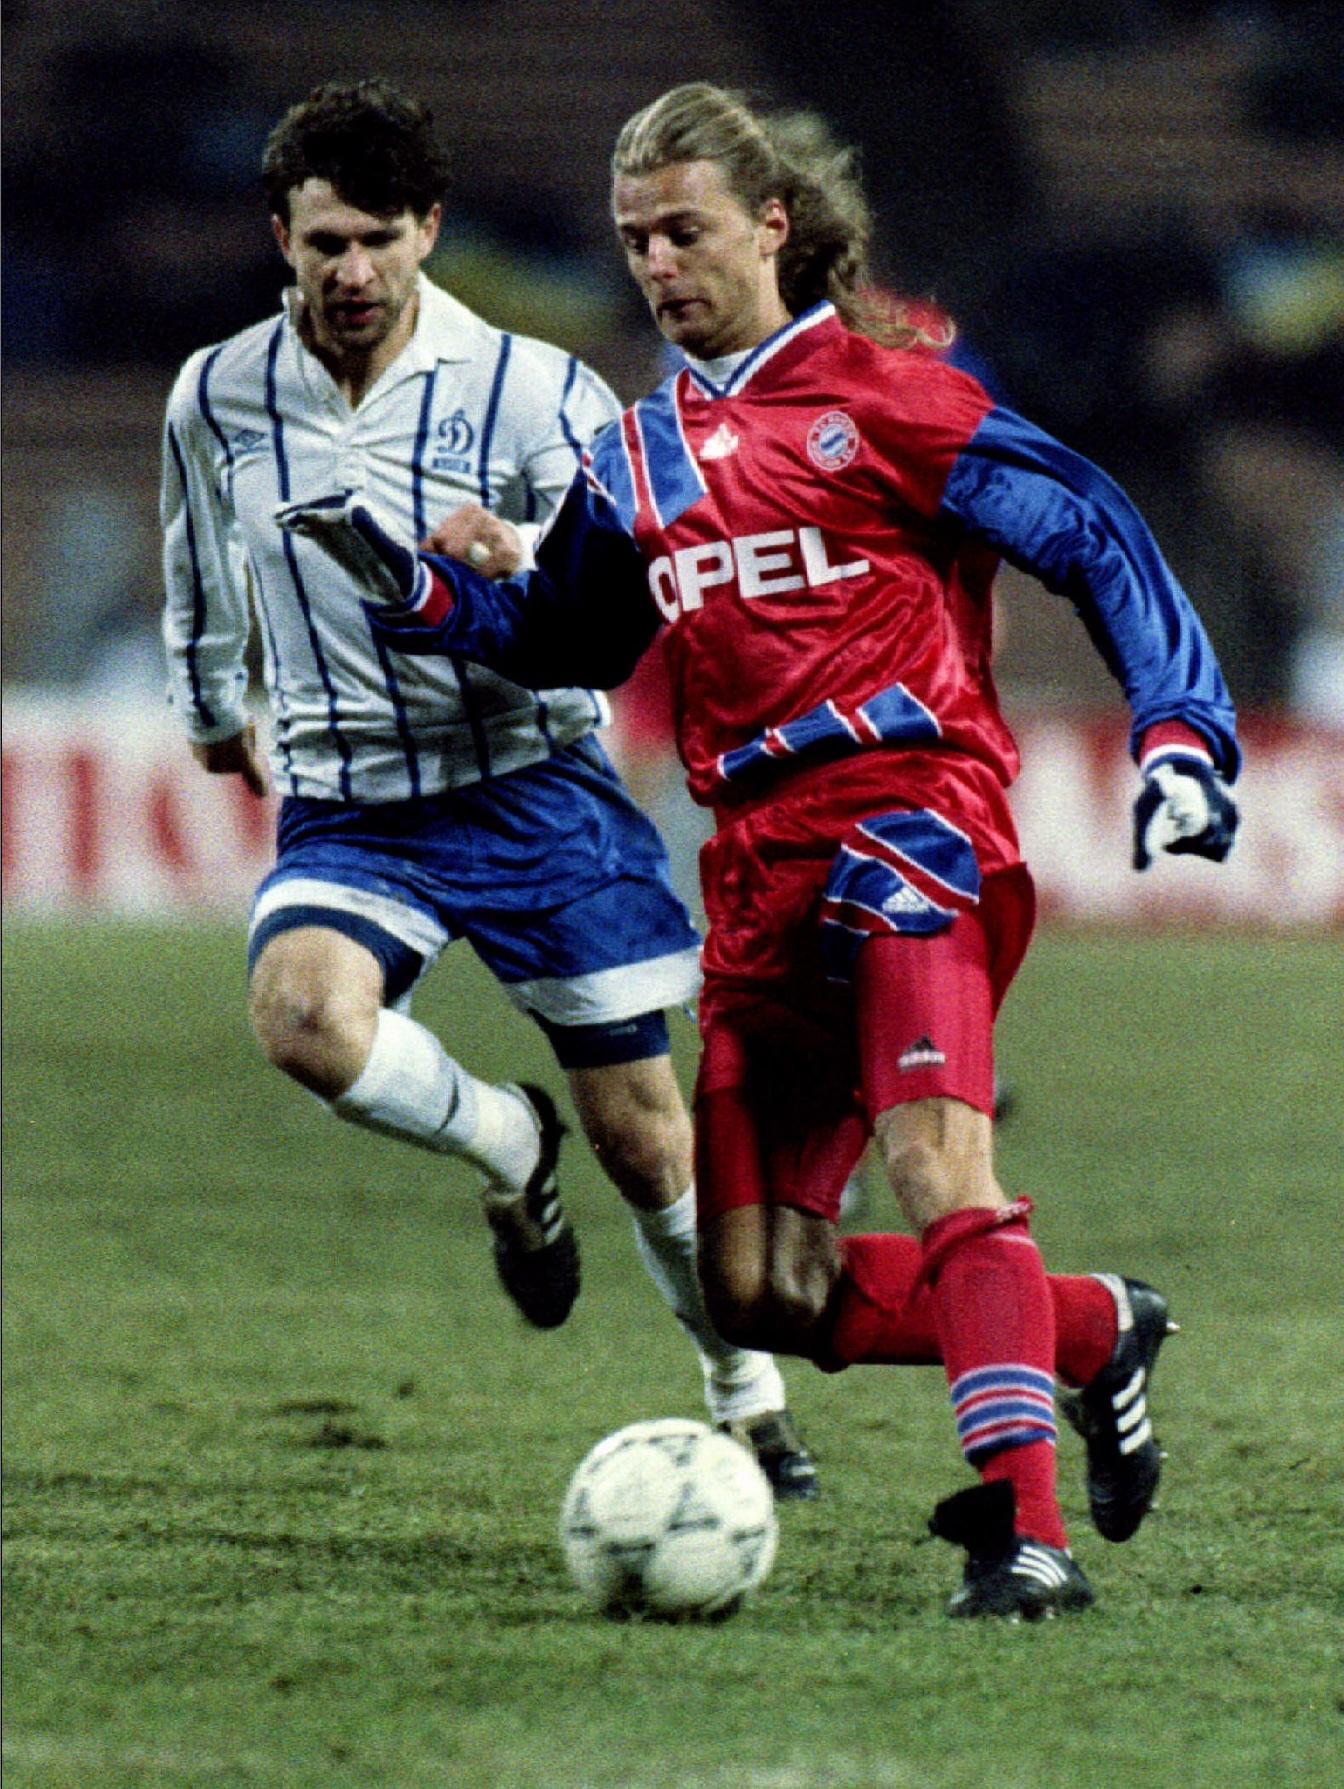 7 décembre 94: sous les couleurs du Bayern de Munich.